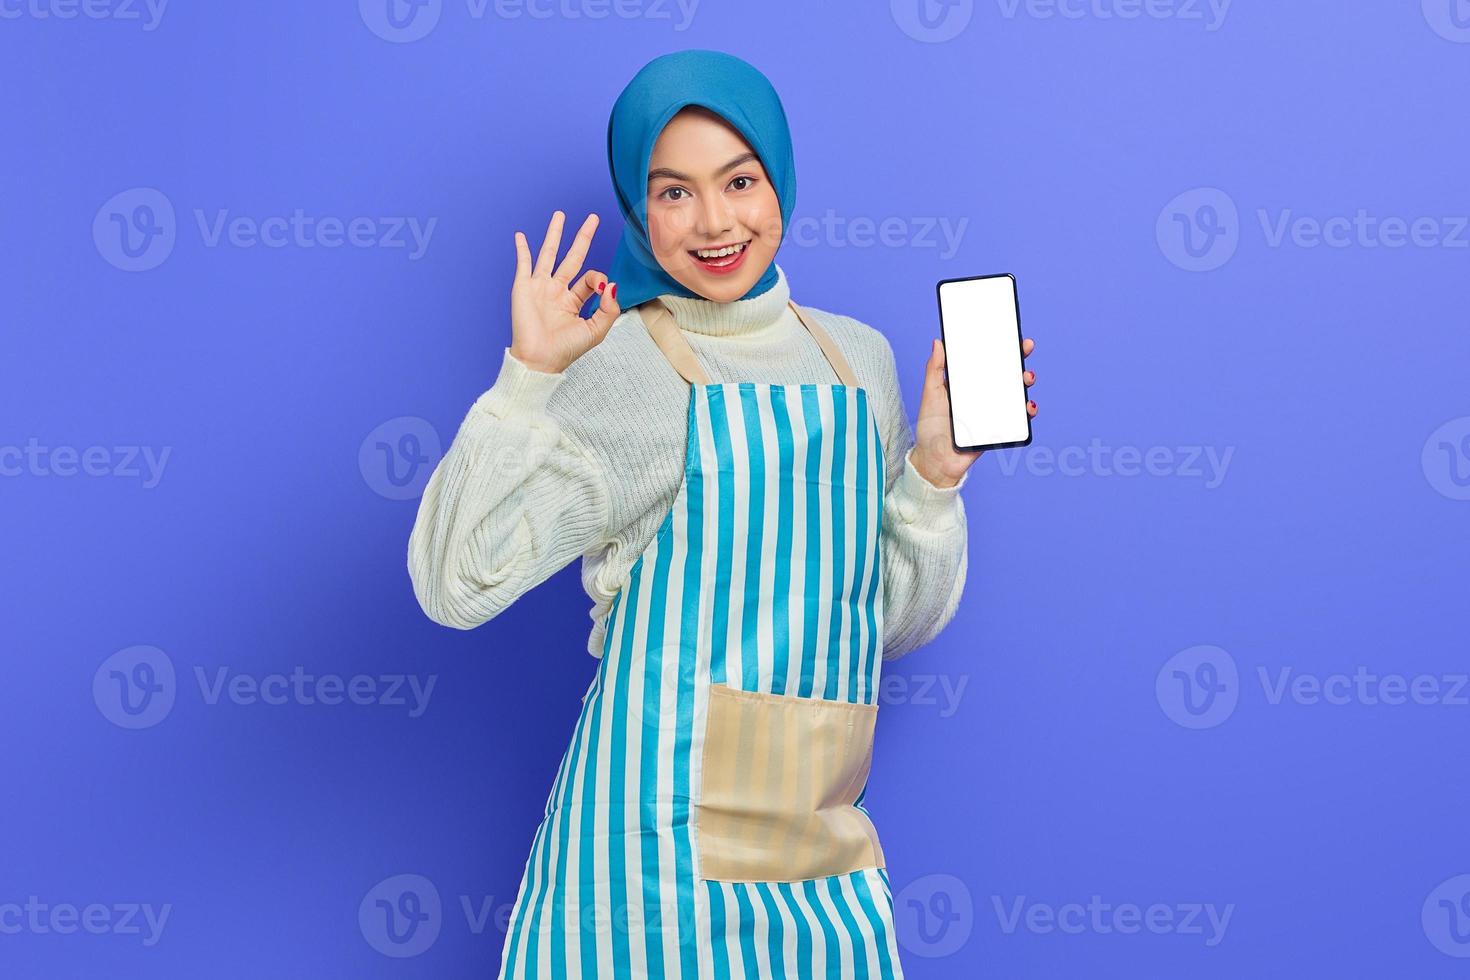 Ritratto di giovane donna musulmana asiatica sorridente negli anni '20 che indossa hijab e grembiule con in mano il telefono cellulare mentre mostra un gesto ok isolato su sfondo viola. concetto di stile di vita musulmano casalinga di persone foto